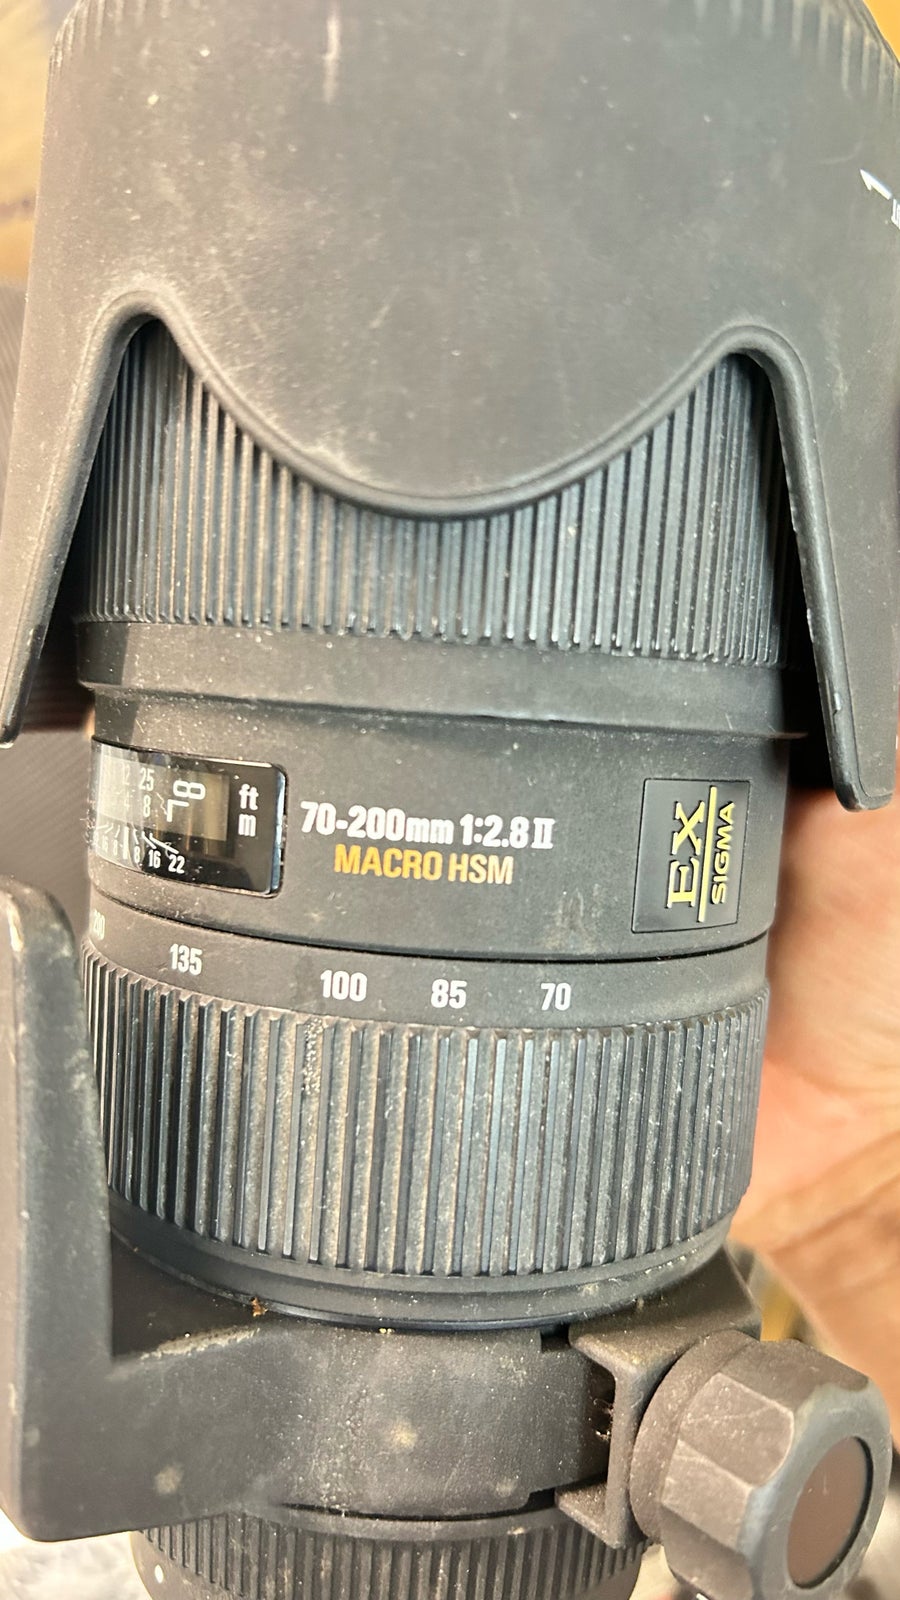 Andet, Nikon D750, spejlrefleks